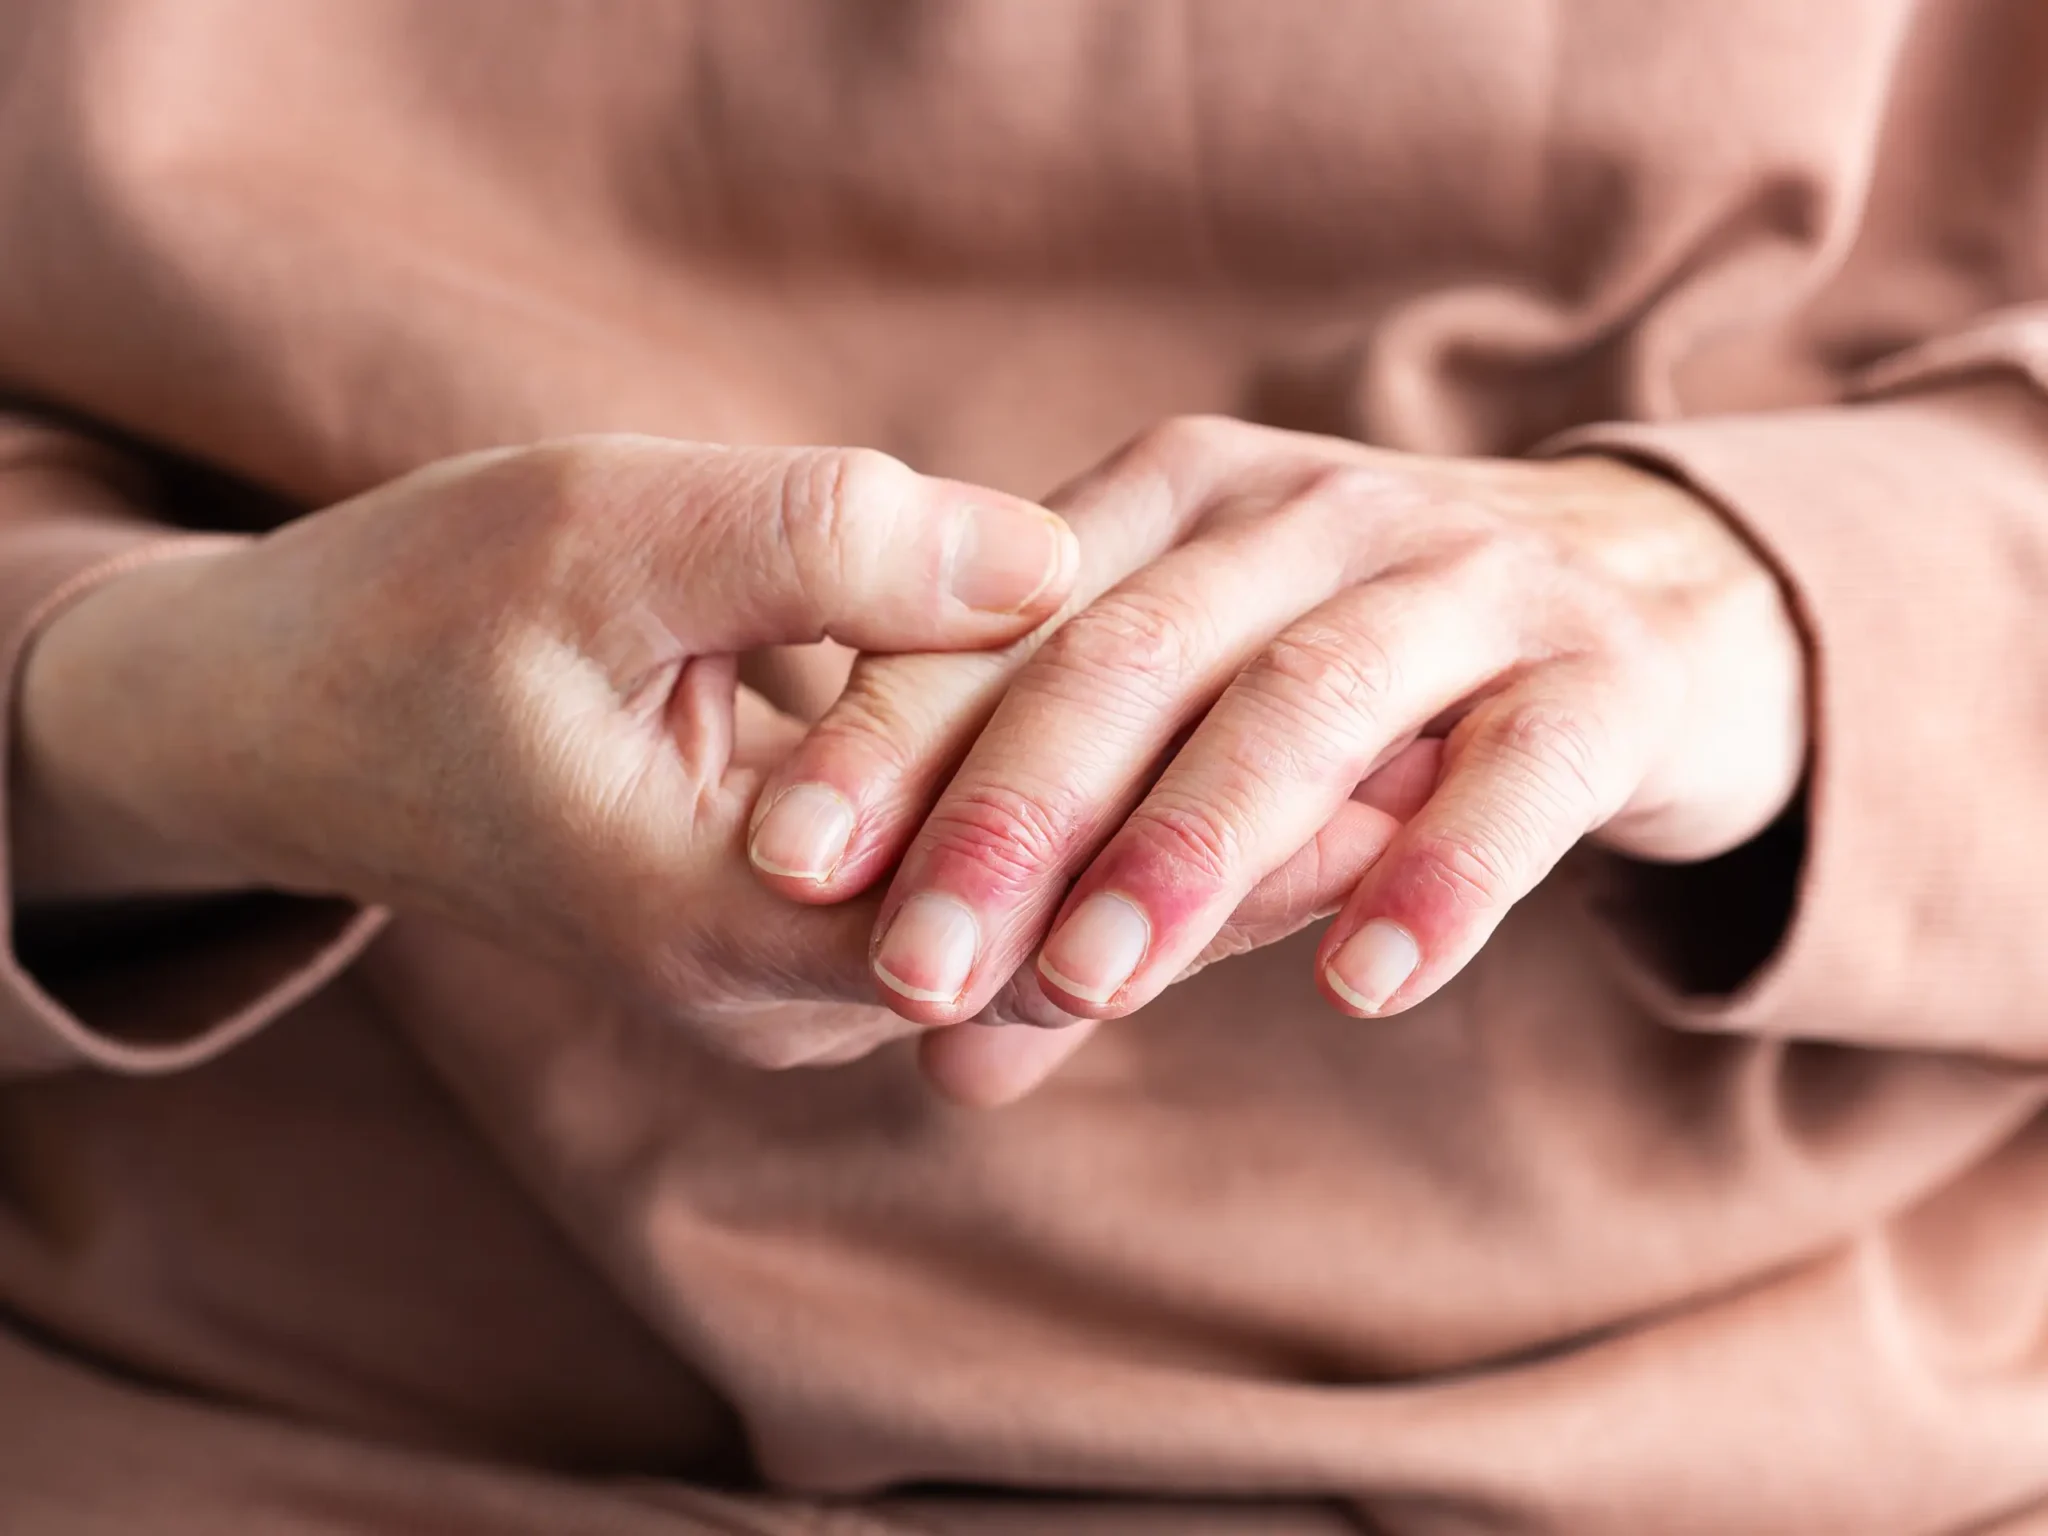 mani affette da dermatite, uno dei sintomi dell'intolleranza al nichel e dell'allergia al nichel